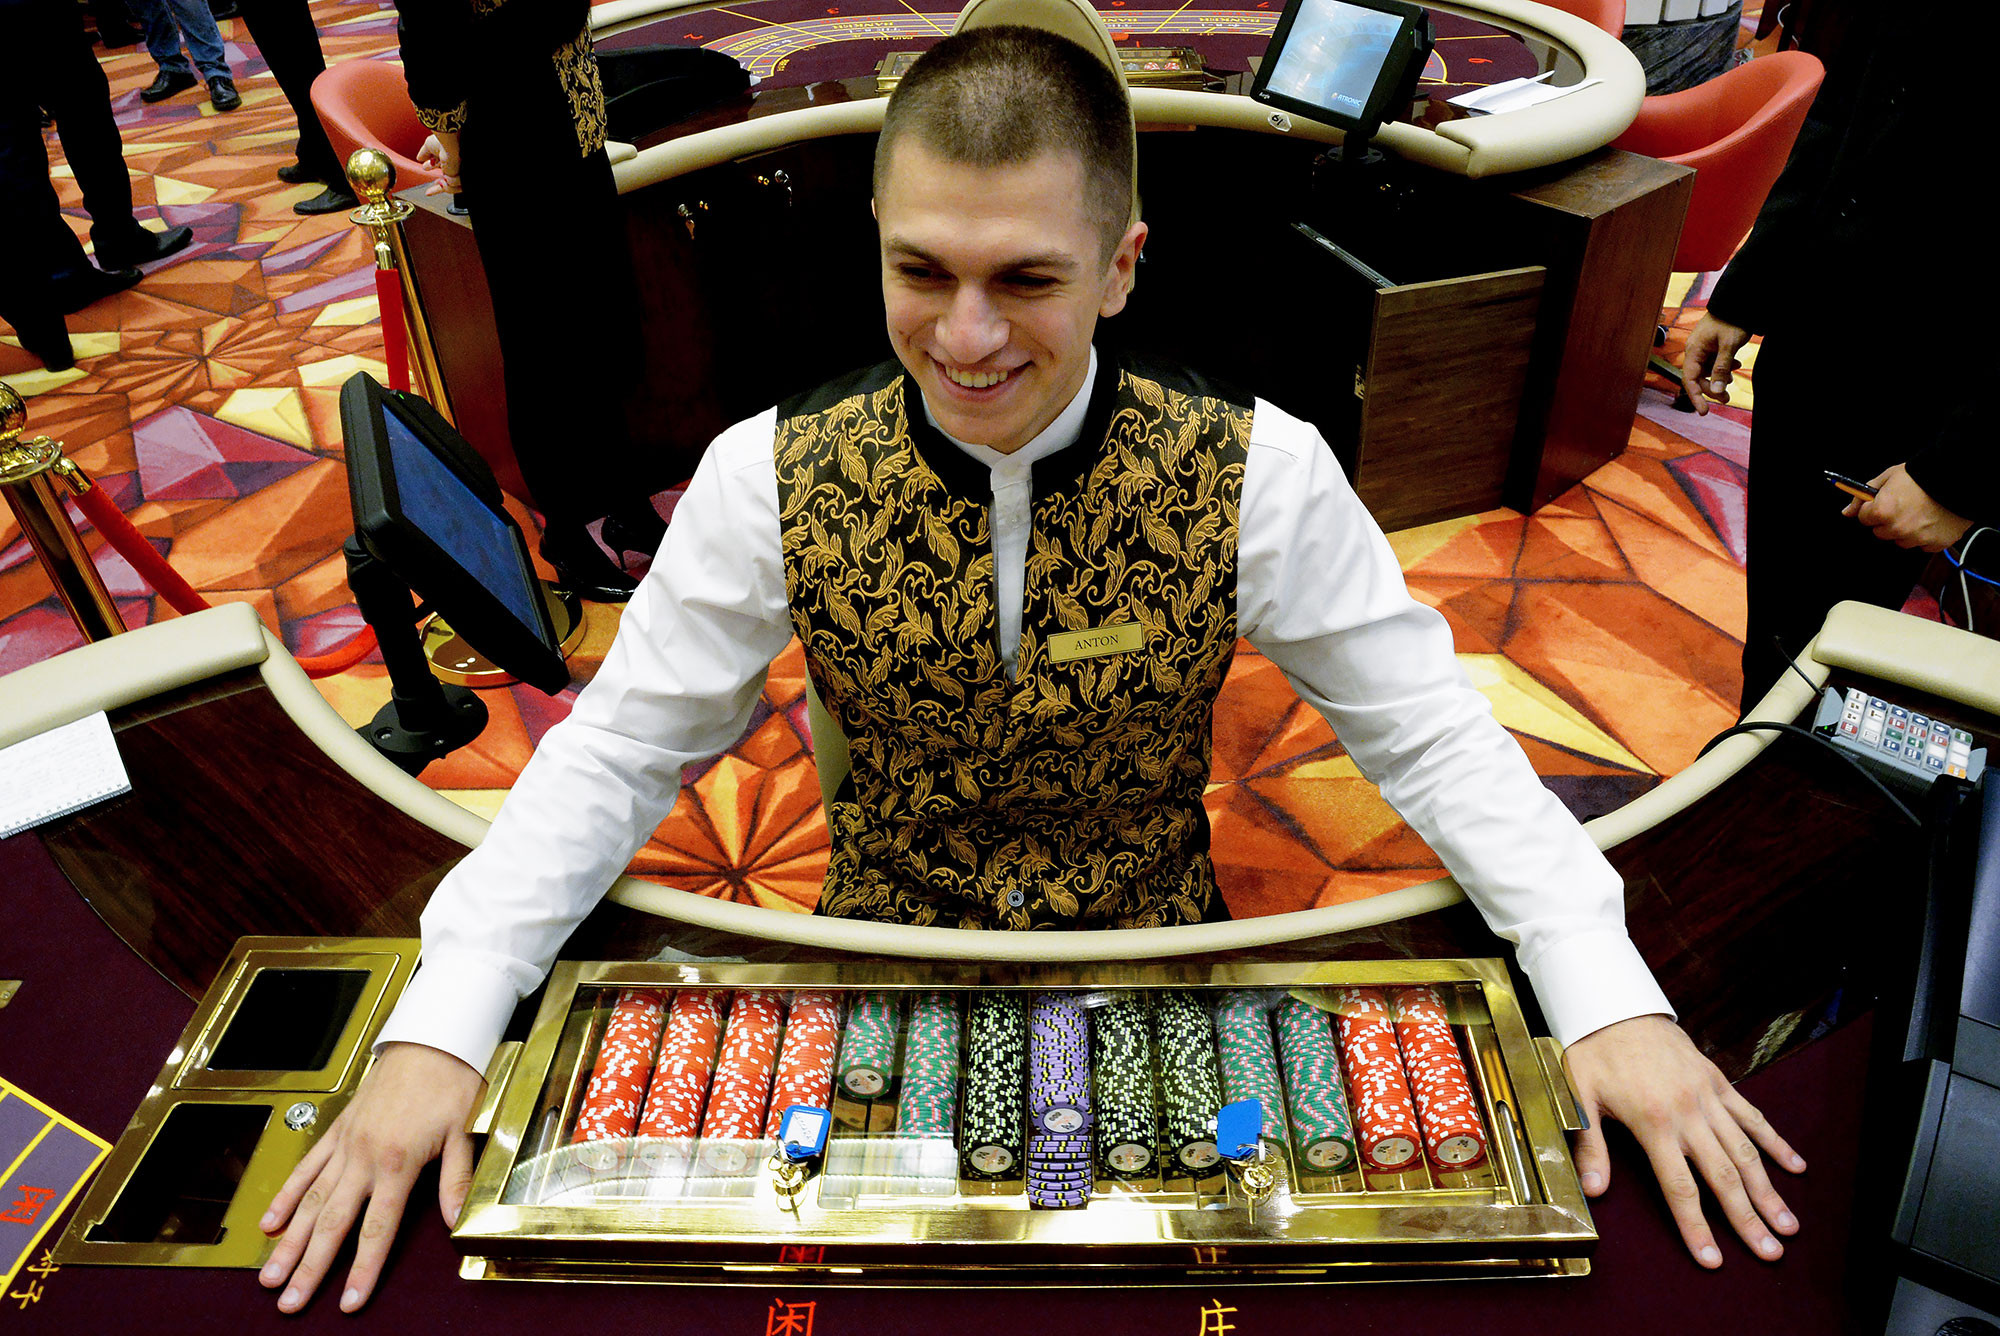 казино в россии крым